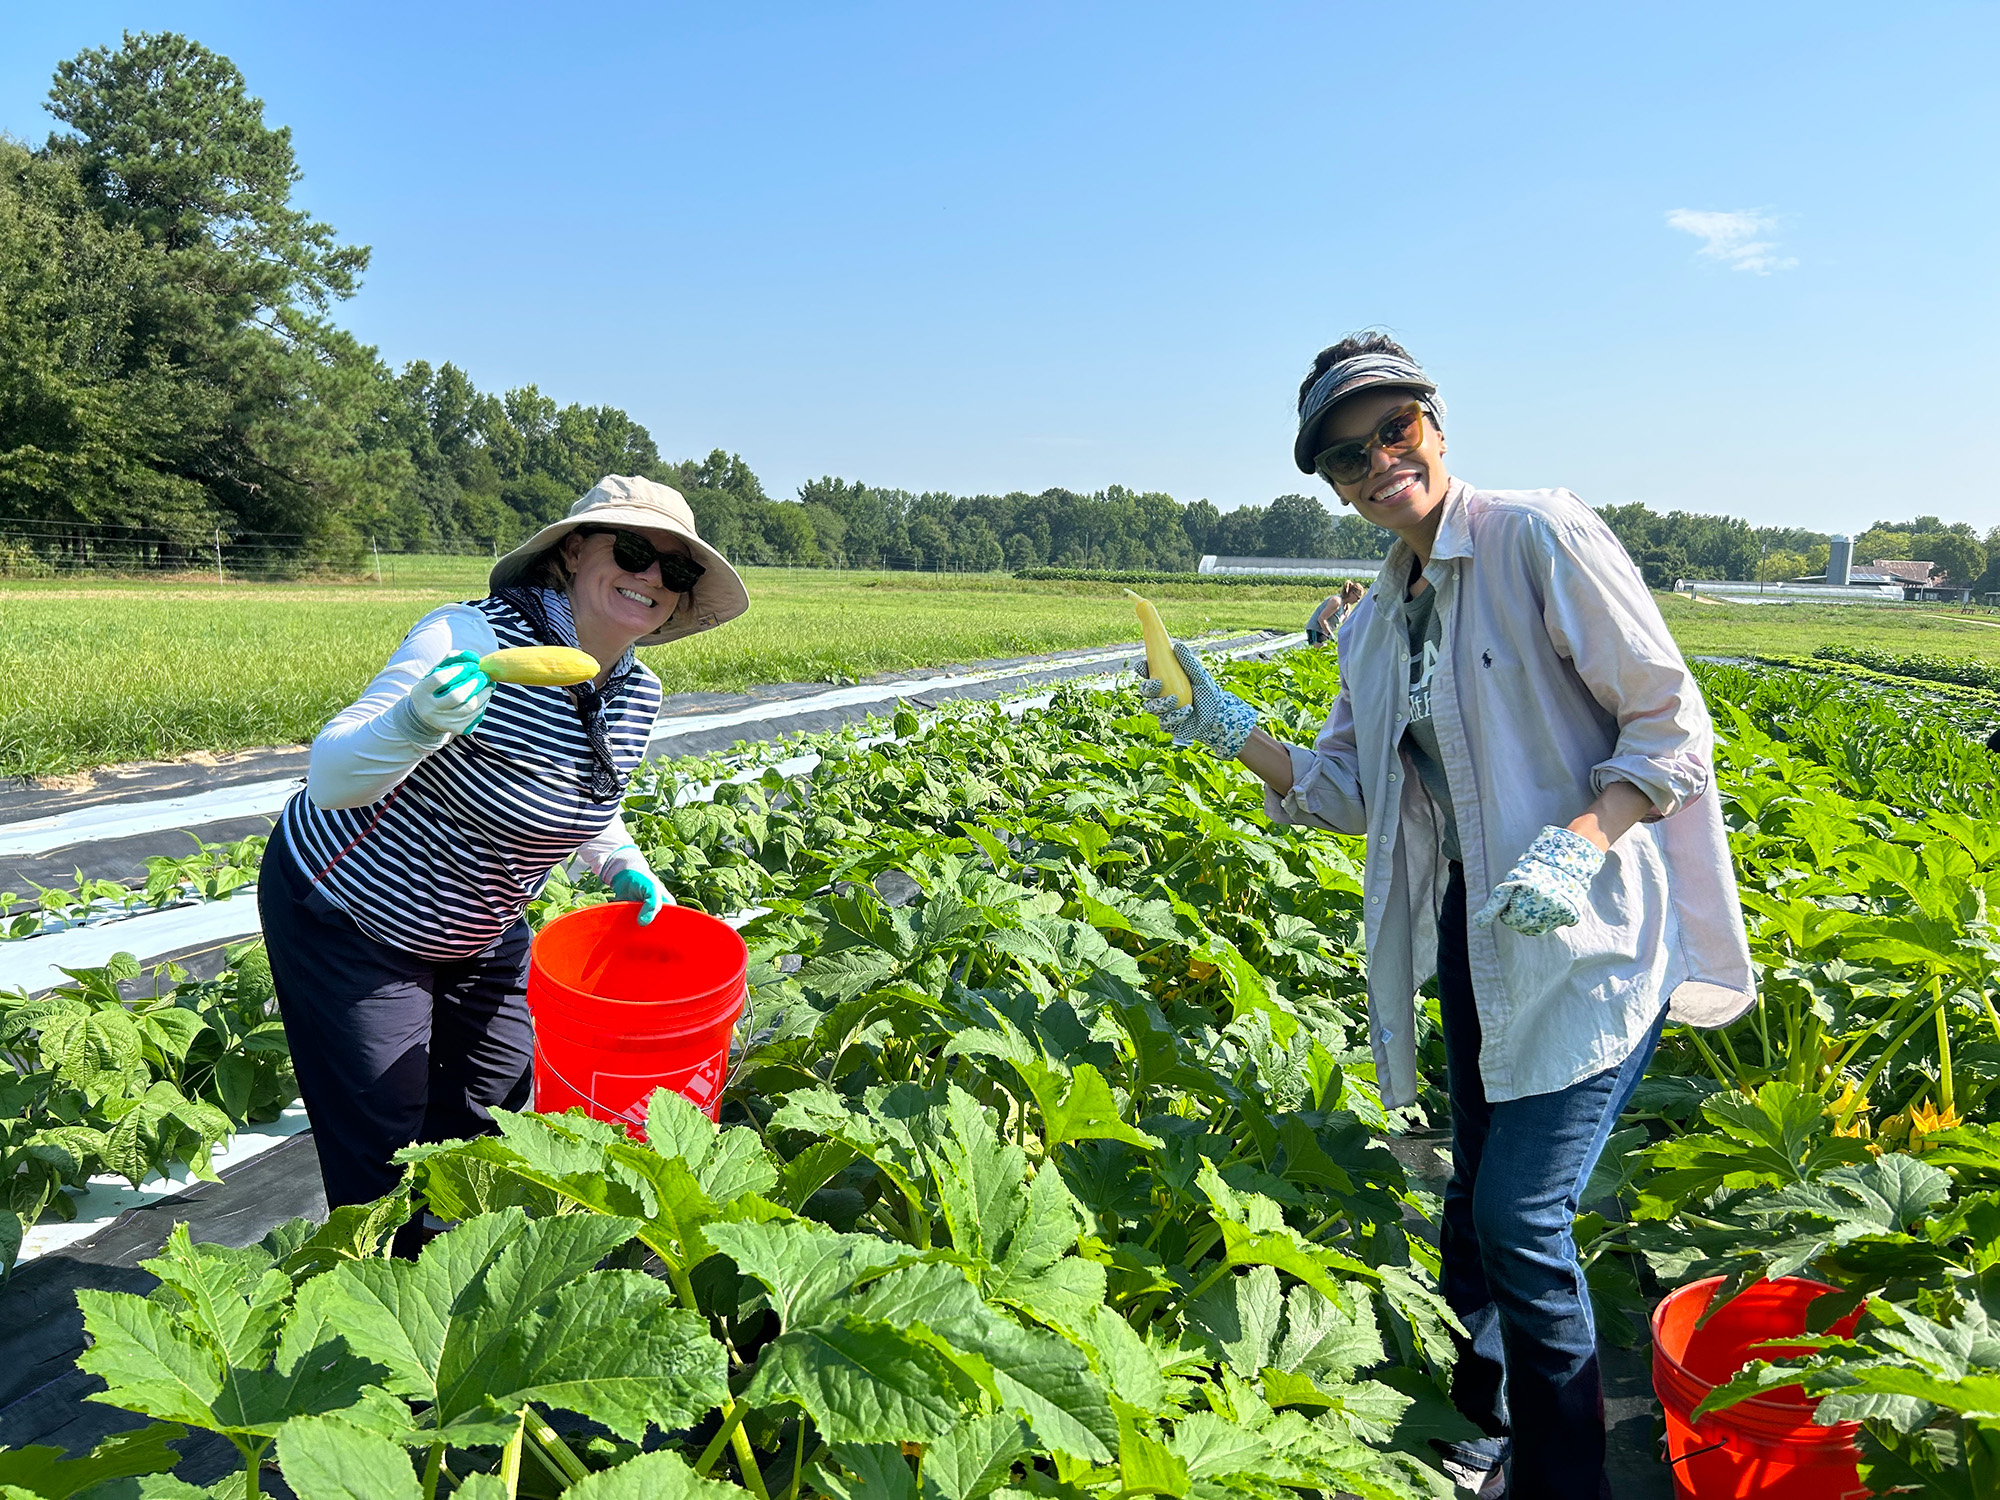 Two ladies in a field harvesting fresh vegetables